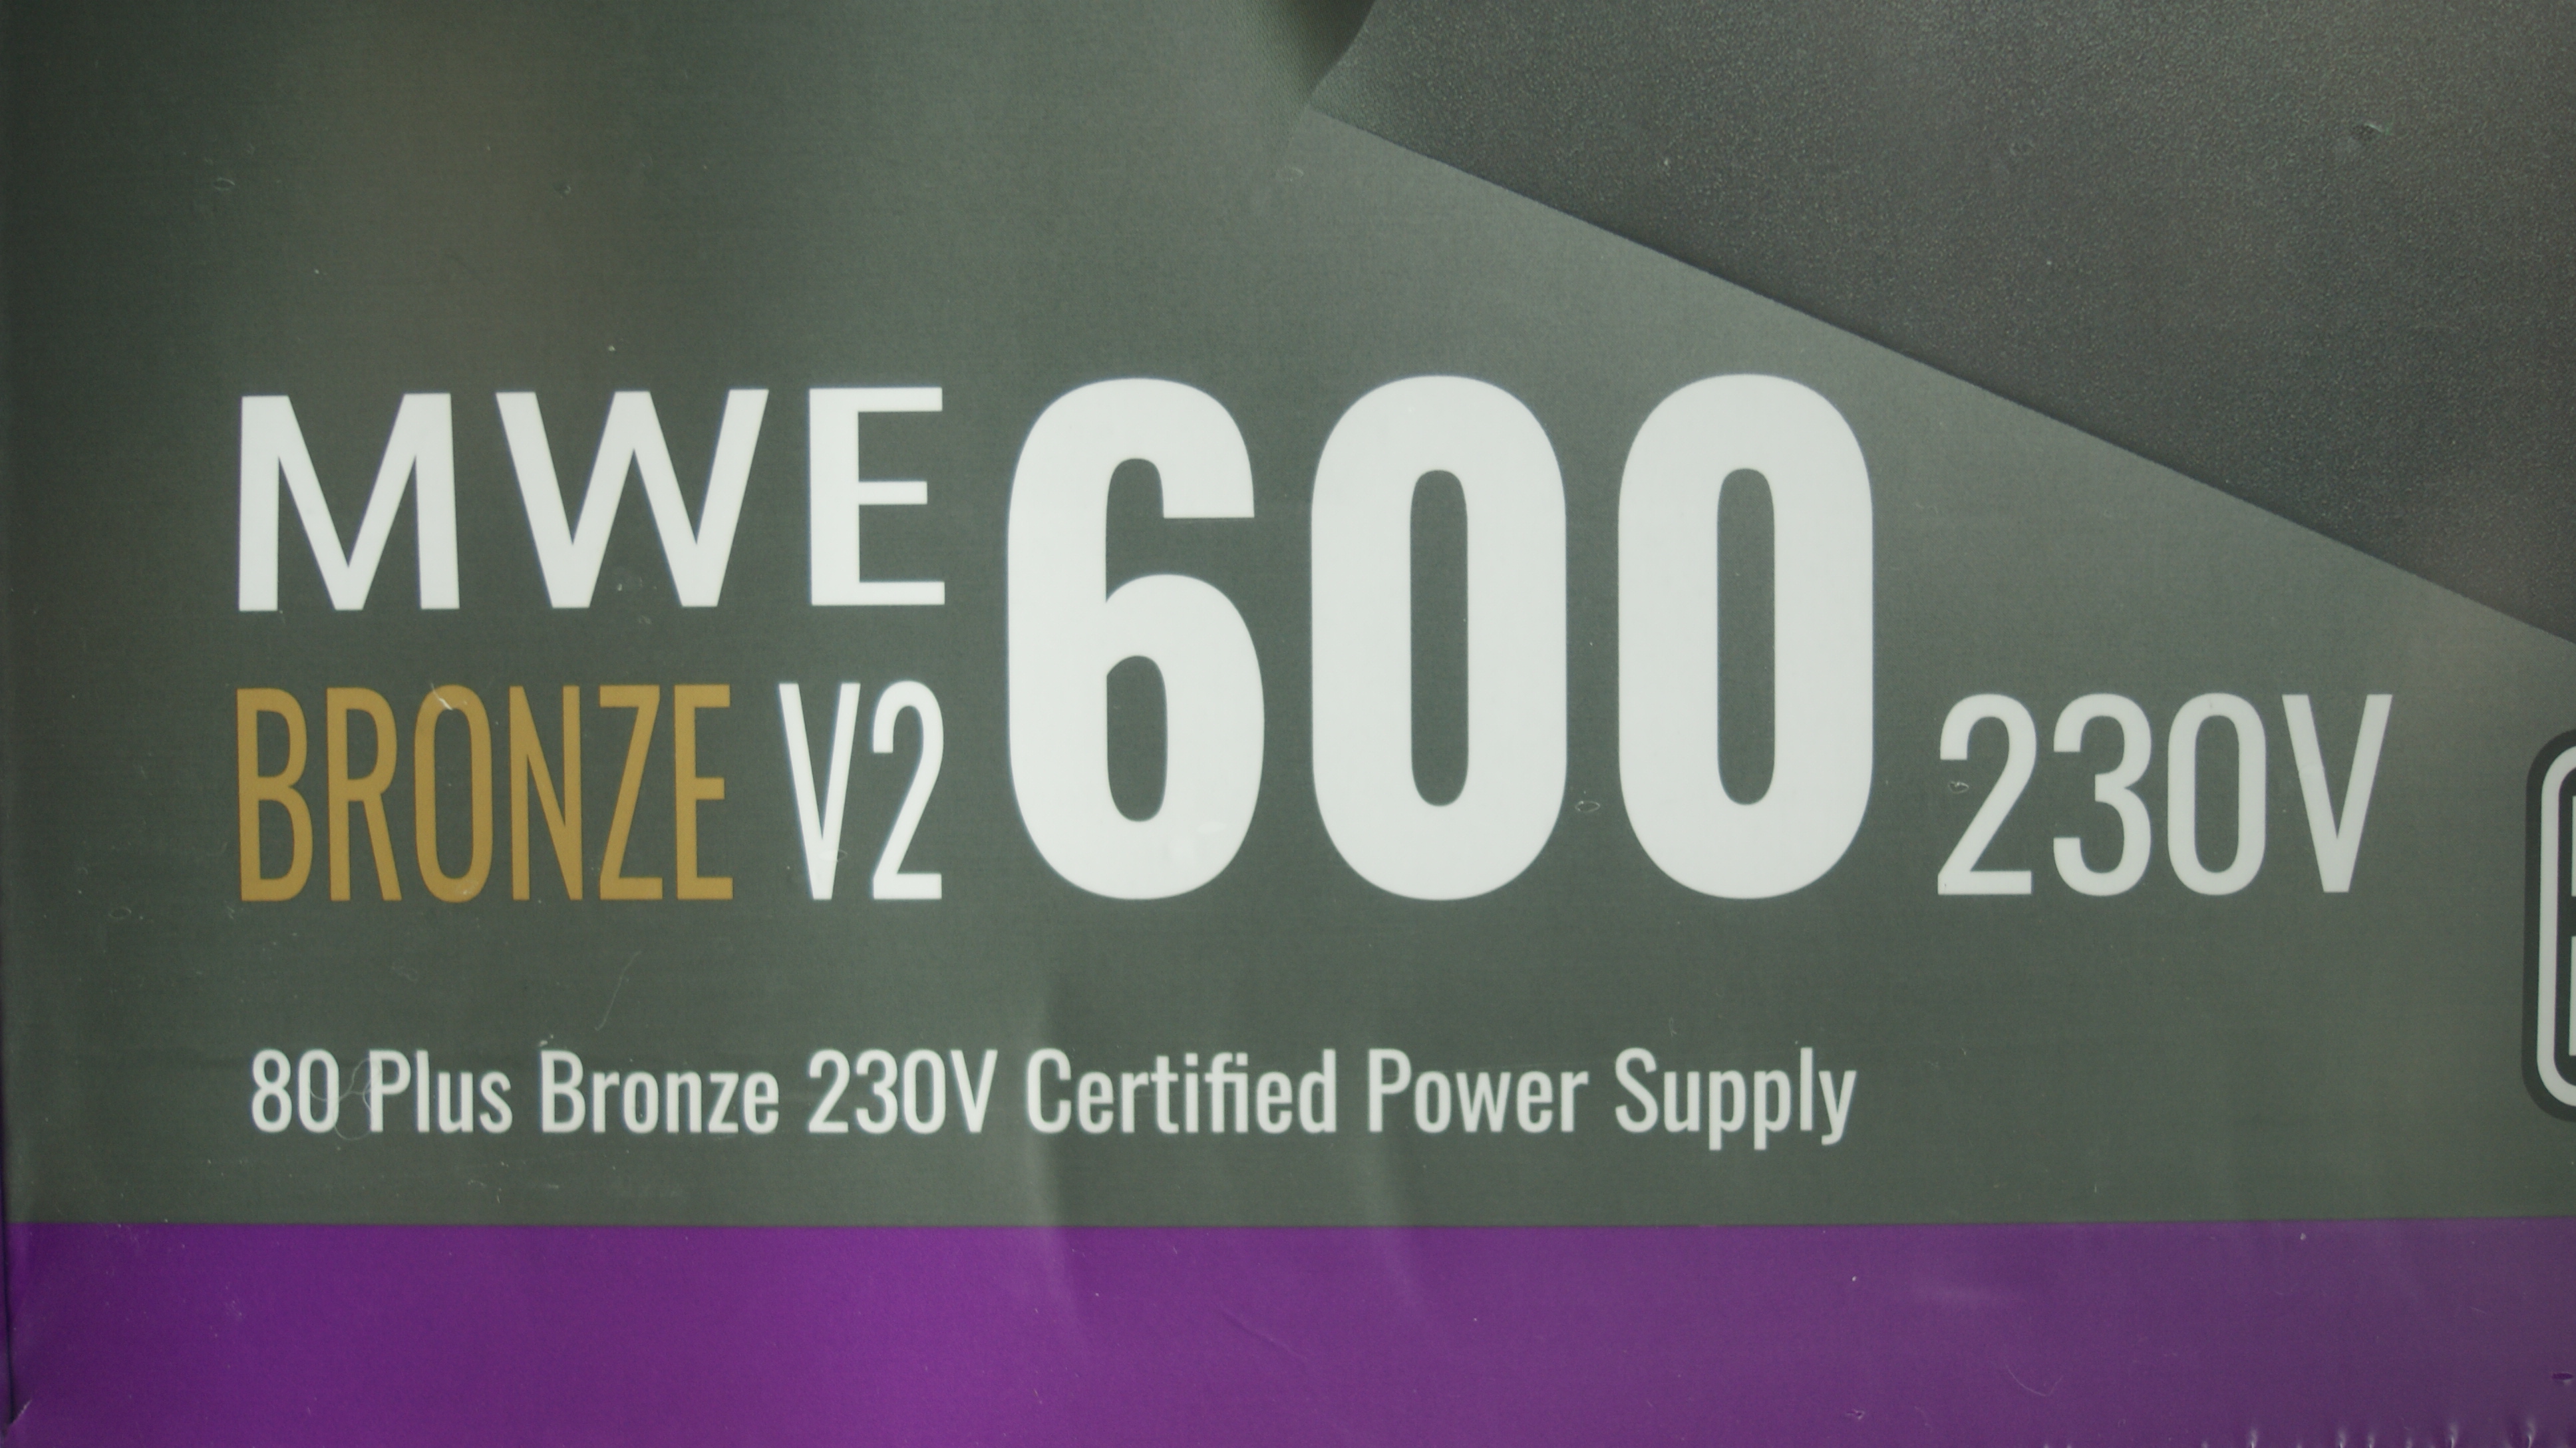 쿨러마스터 MWE 600 BRONZE V2 230V 600W 제품 리뷰